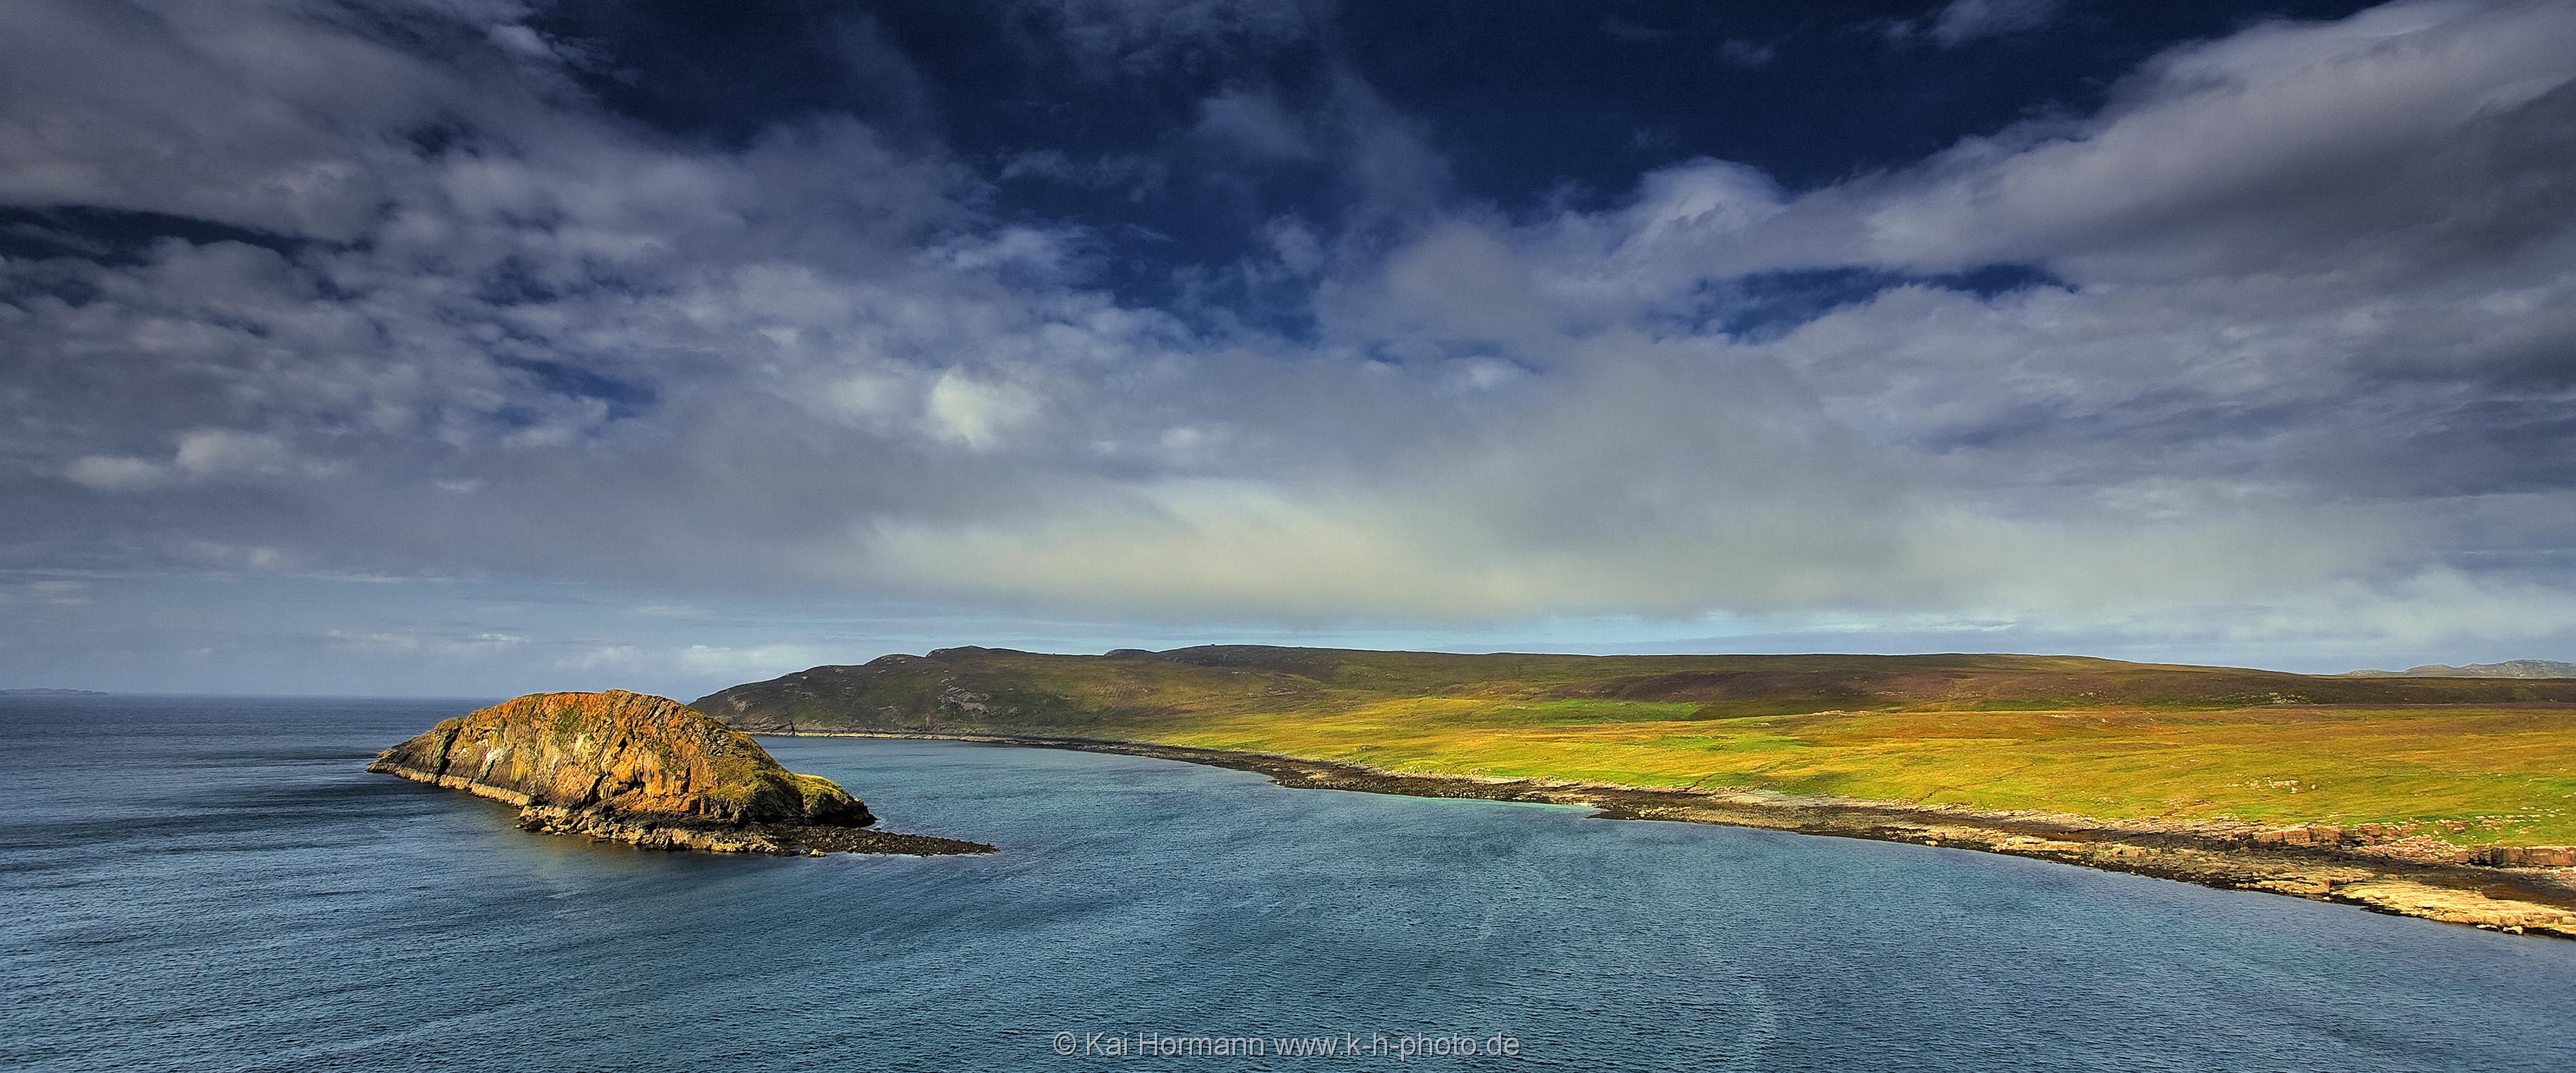 Schottland, Isle of skye Panorama. Isle of skye, Schottland.